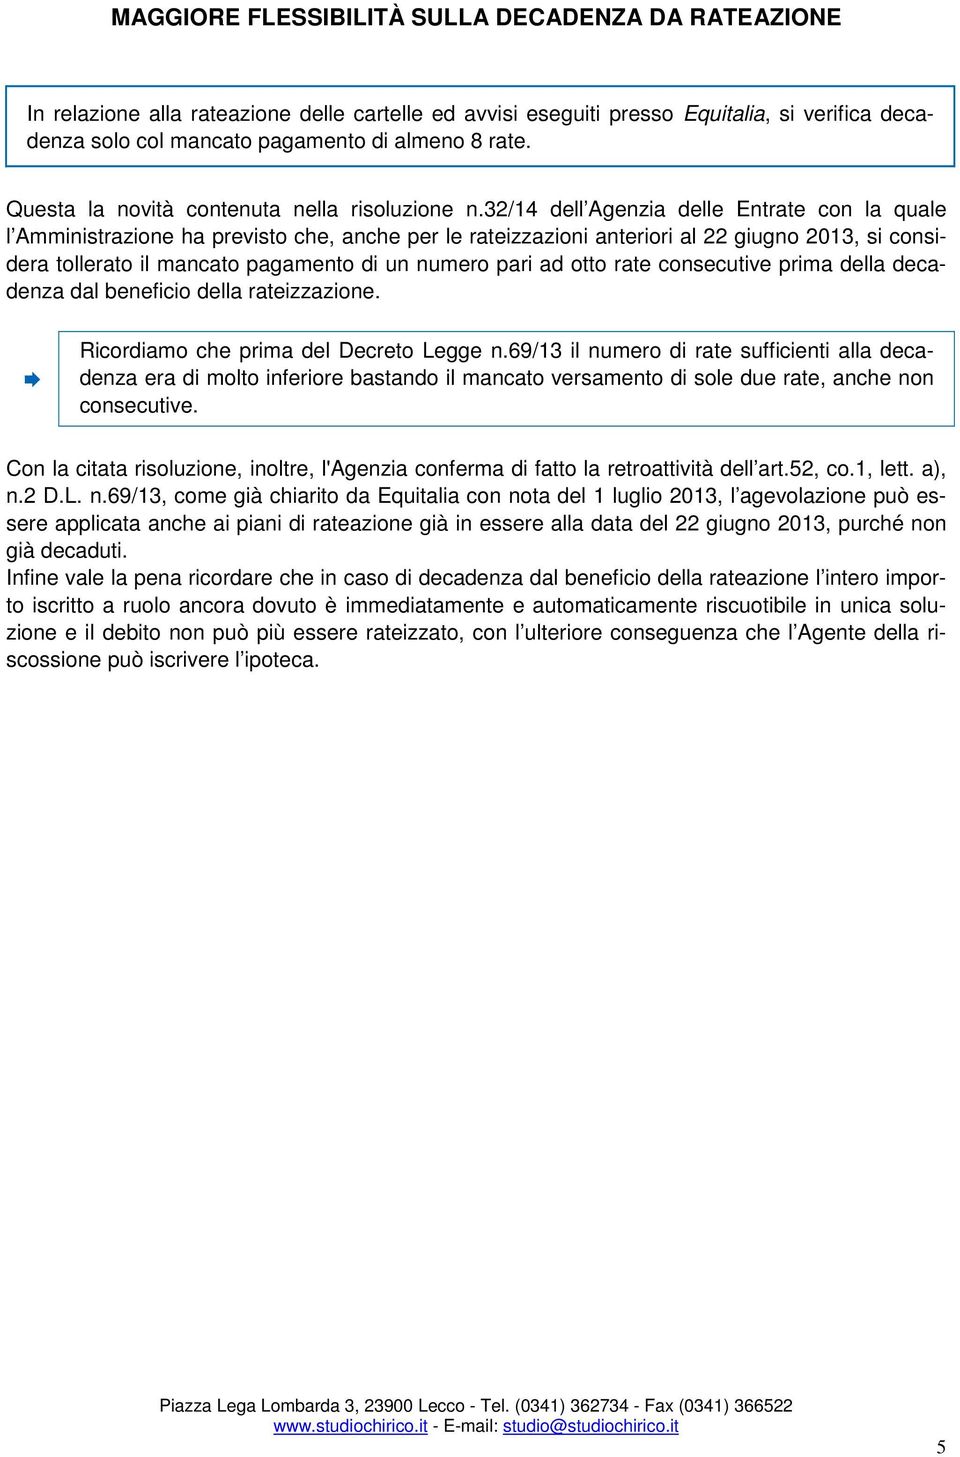 32/14 dell Agenzia delle Entrate con la quale l Amministrazione ha previsto che, anche per le rateizzazioni anteriori al 22 giugno 2013, si considera tollerato il mancato pagamento di un numero pari